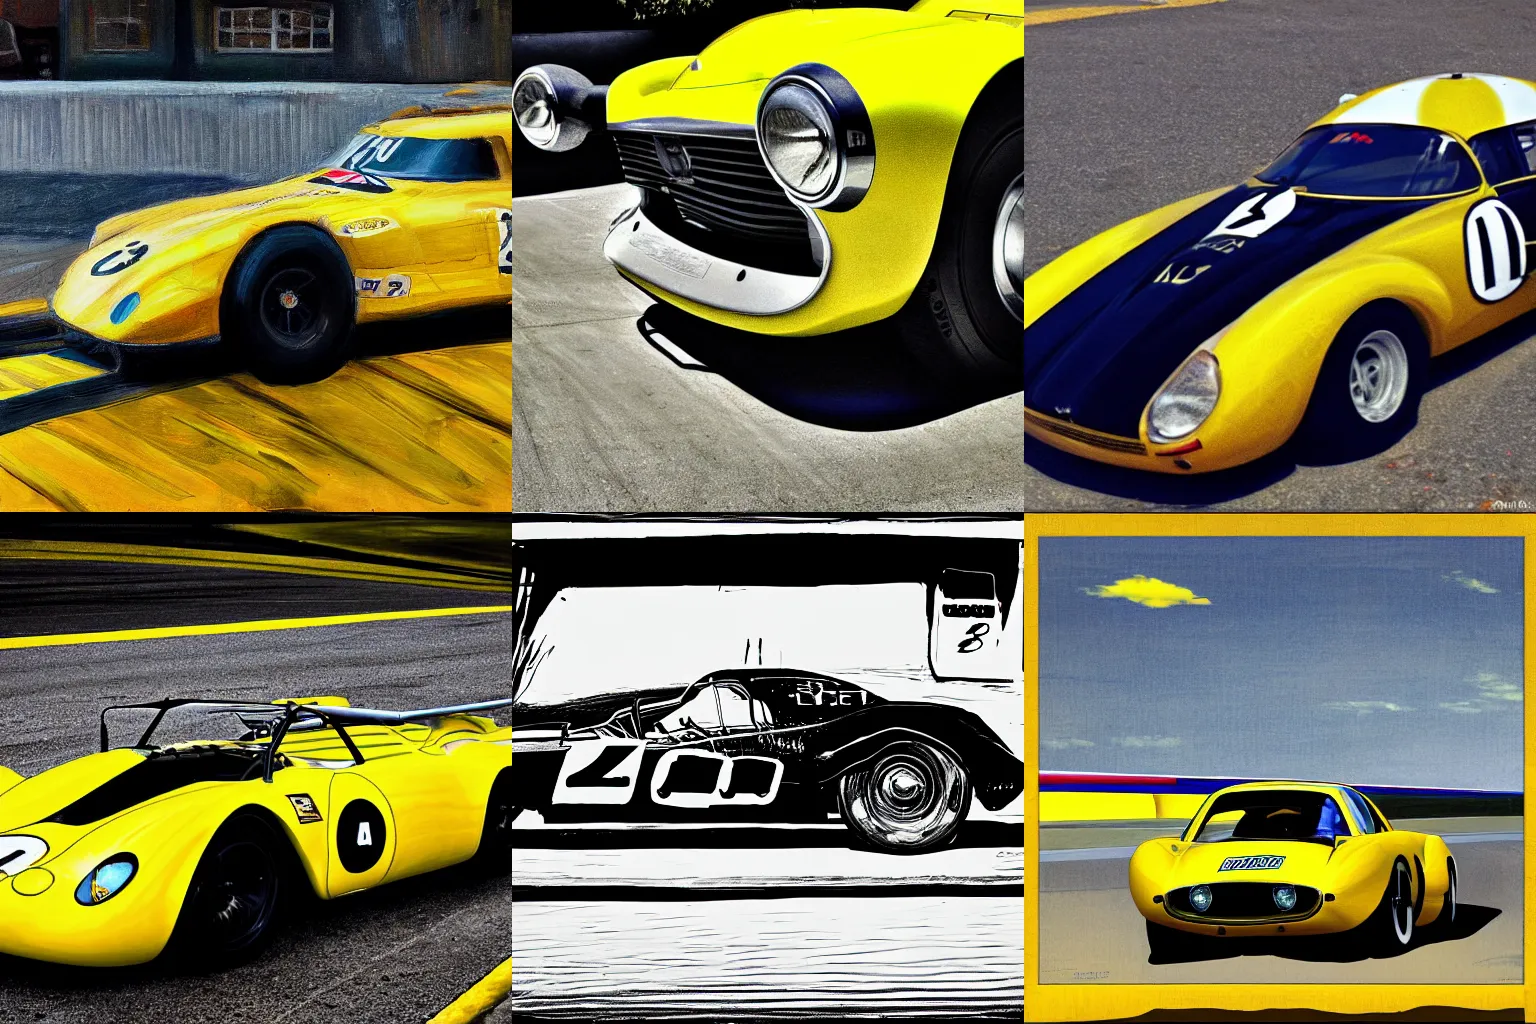 Prompt: a yellow race car by john frye.